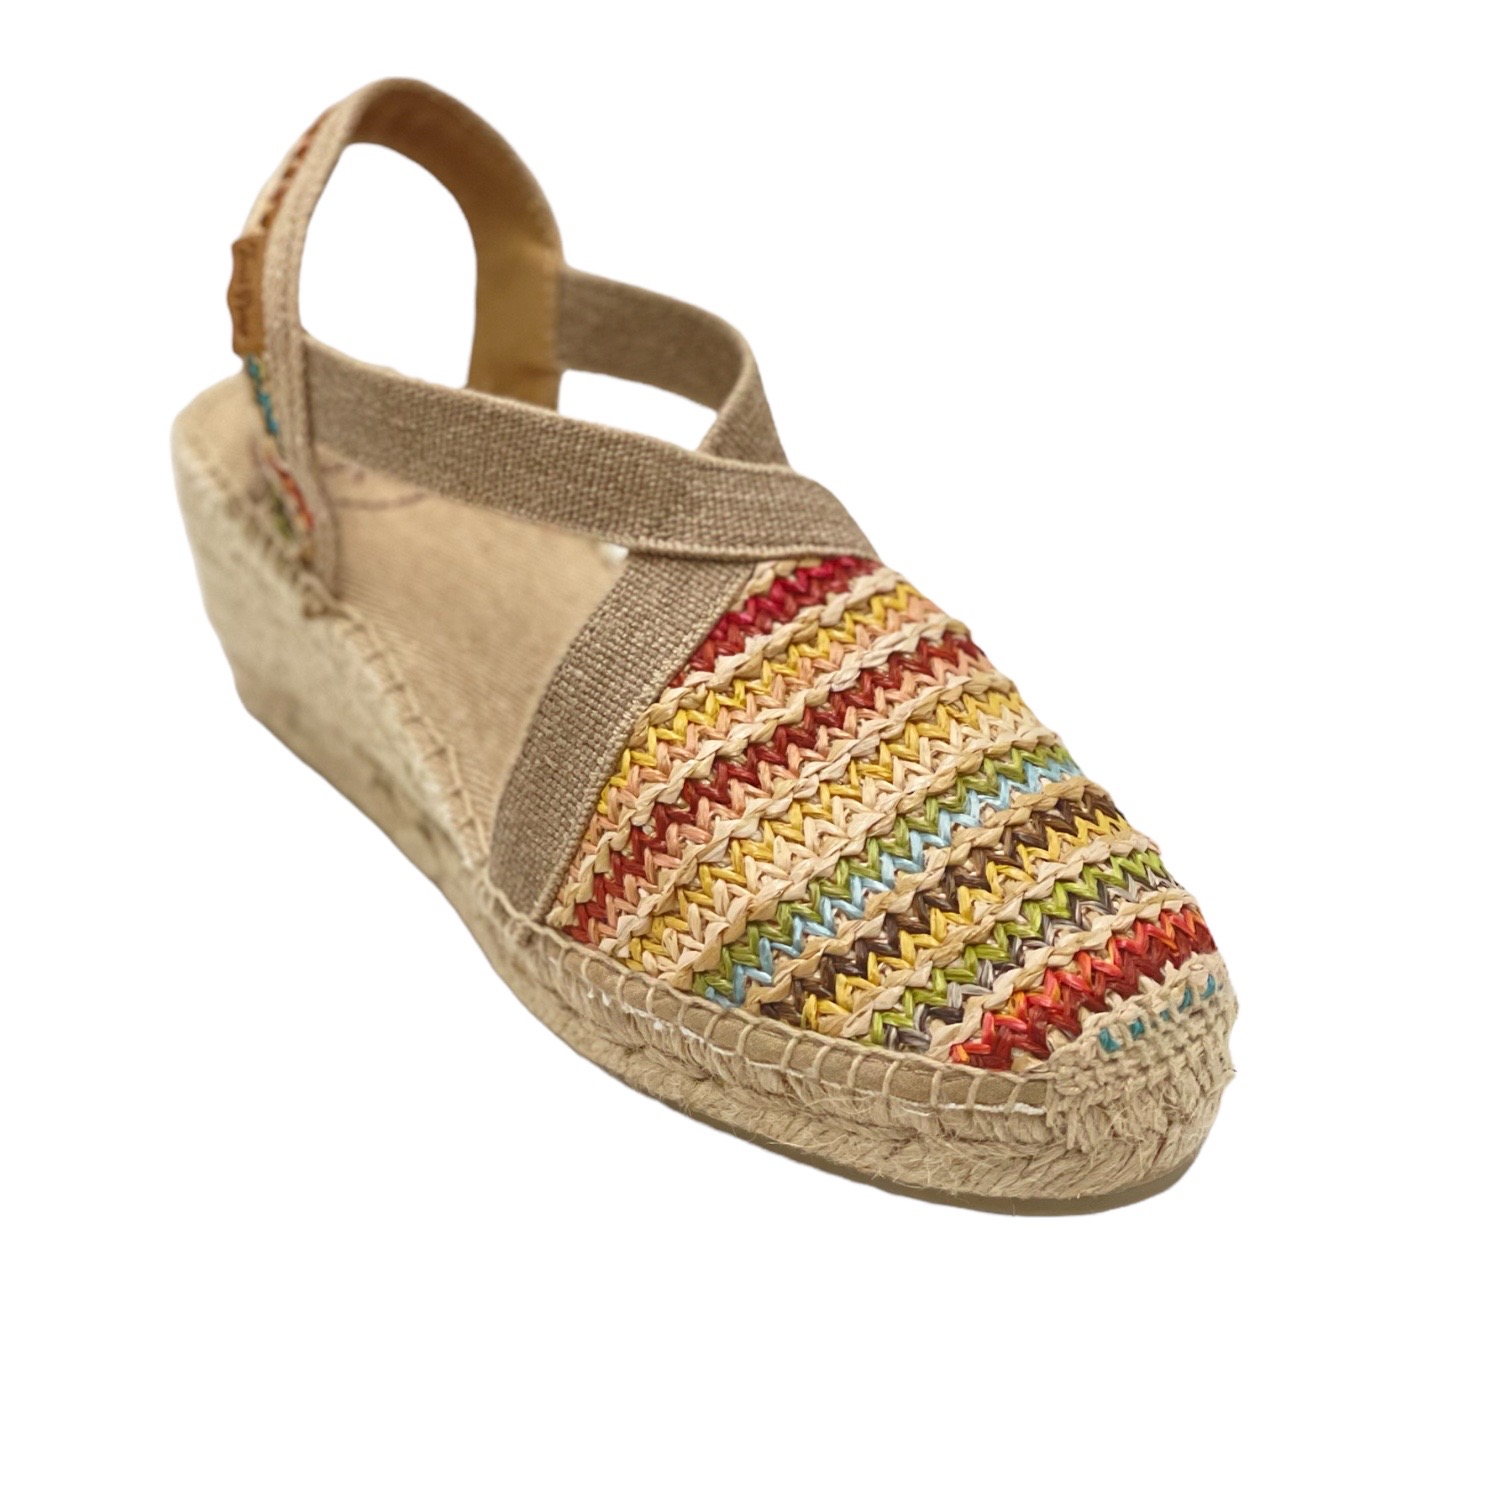 Sandals: TONI PONS Shoes multicolor Fabric heel 5 cm